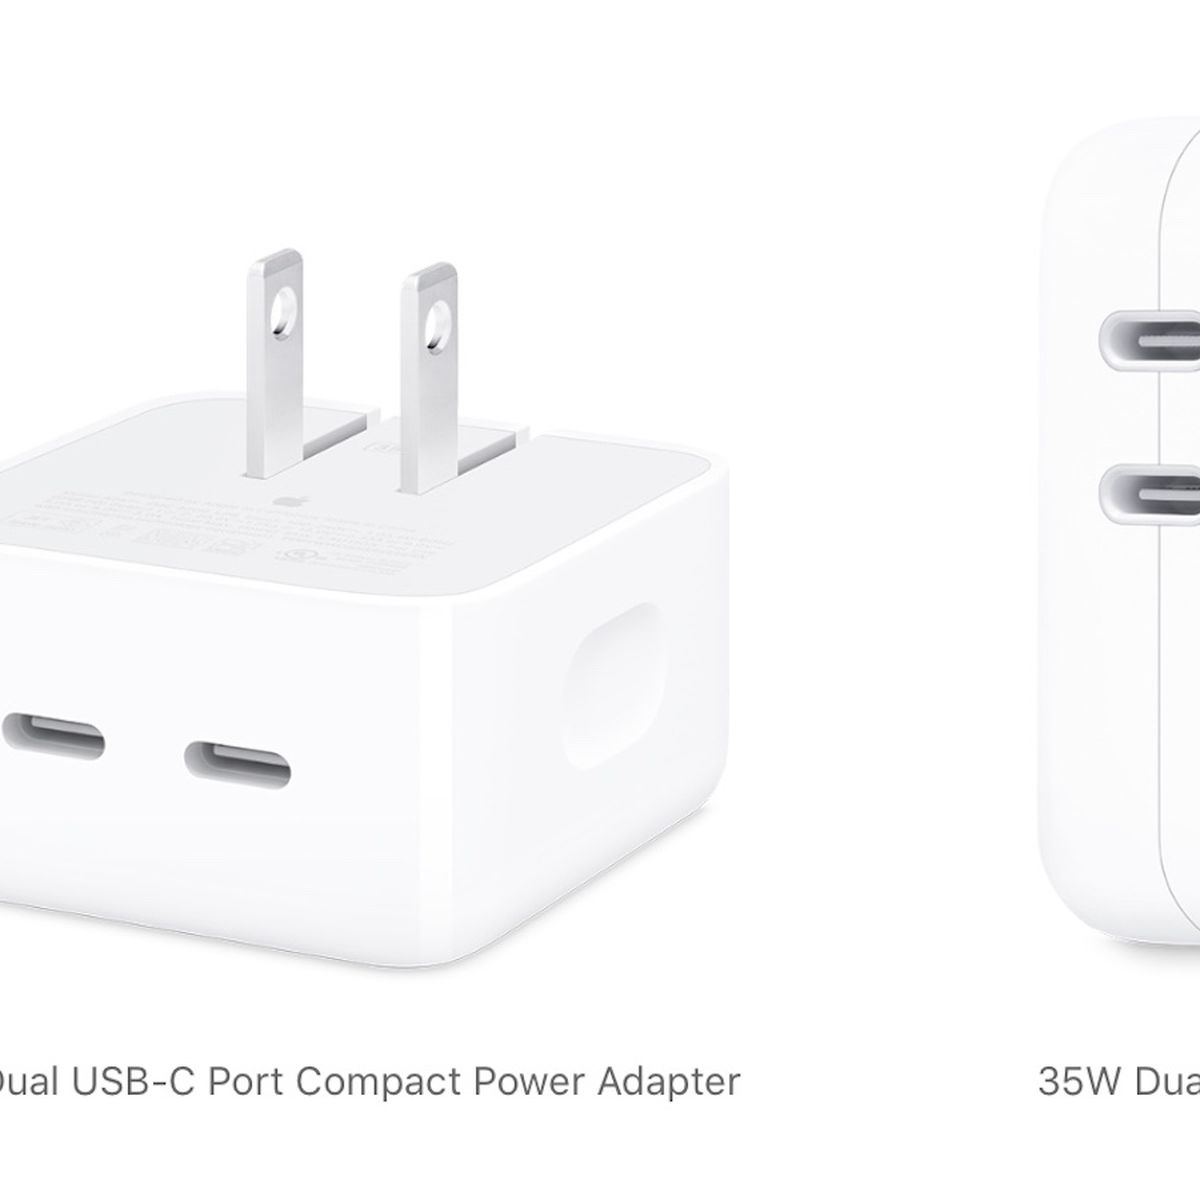 Voorkeursbehandeling Marxistisch Professor Apple Shares Charging Details for New Dual USB-C Power Adapters - MacRumors